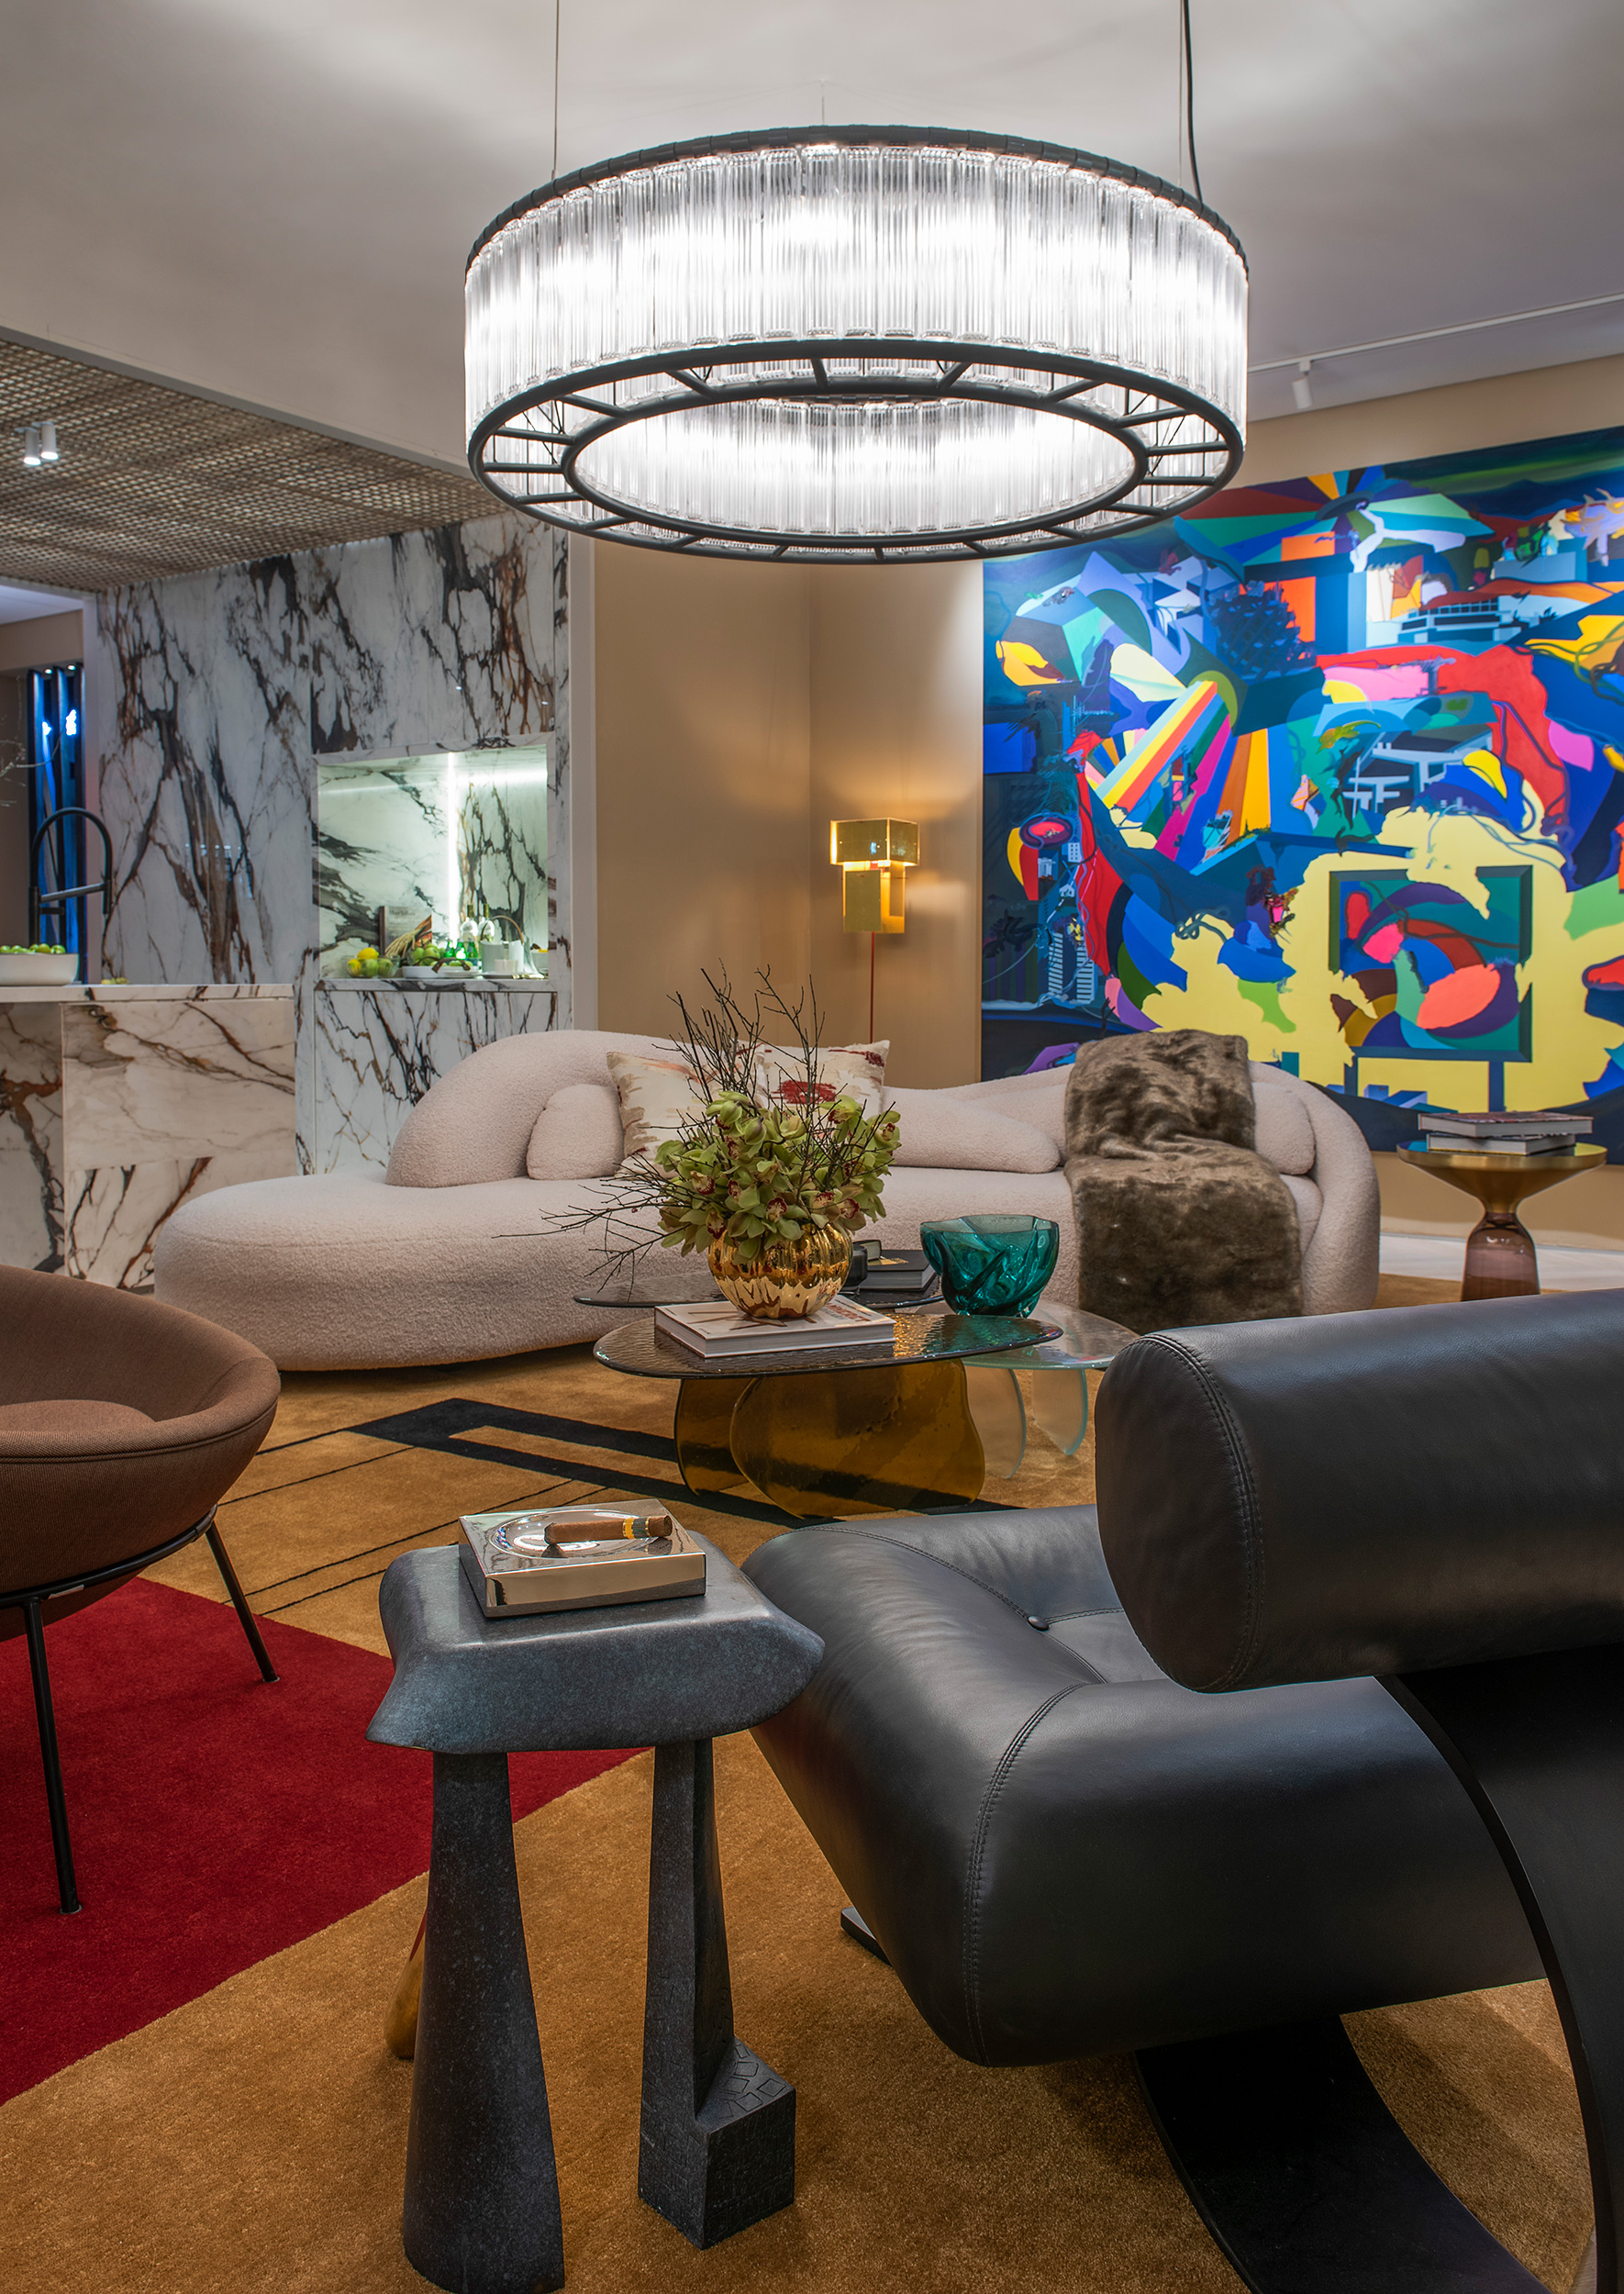 murilo lomas arquitetura living art casacor sp 2022 decoracao design mostras sala estar lustre sofa